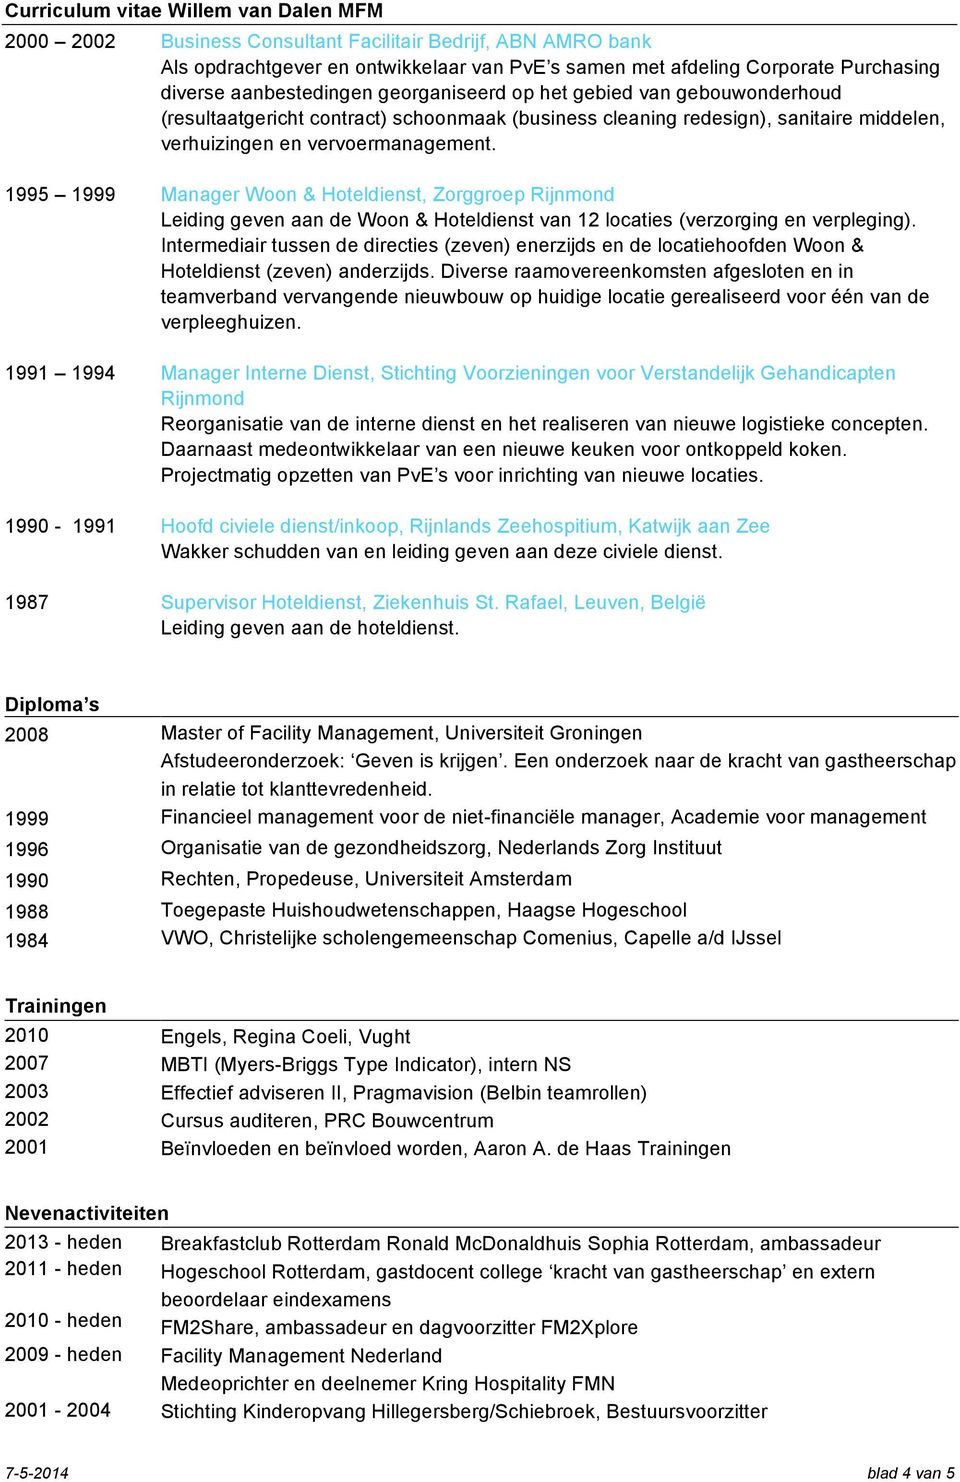 1995 1999 Manager Woon & Hoteldienst, Zorggroep Rijnmond Leiding geven aan de Woon & Hoteldienst van 12 locaties (verzorging en verpleging).